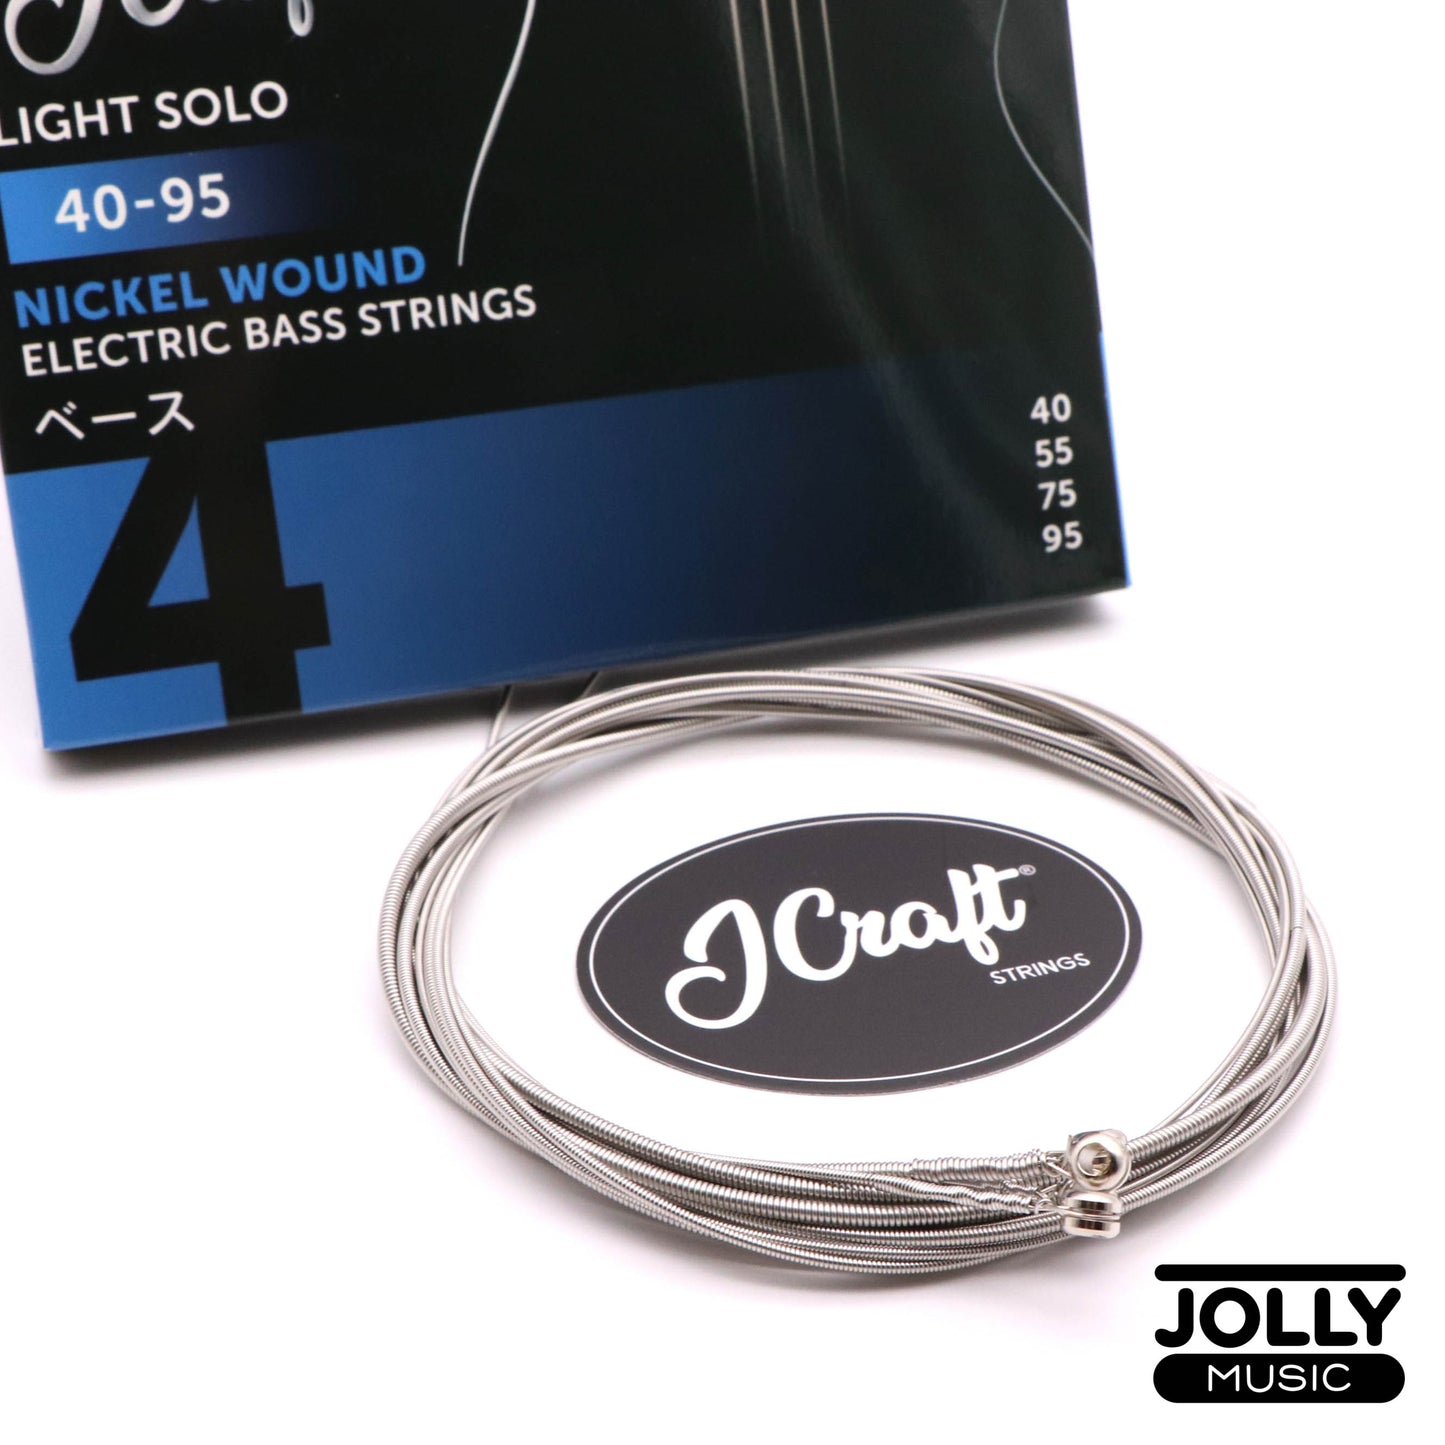 JCraft Regular Light 4-String Electric Bass Guitar String 40-95